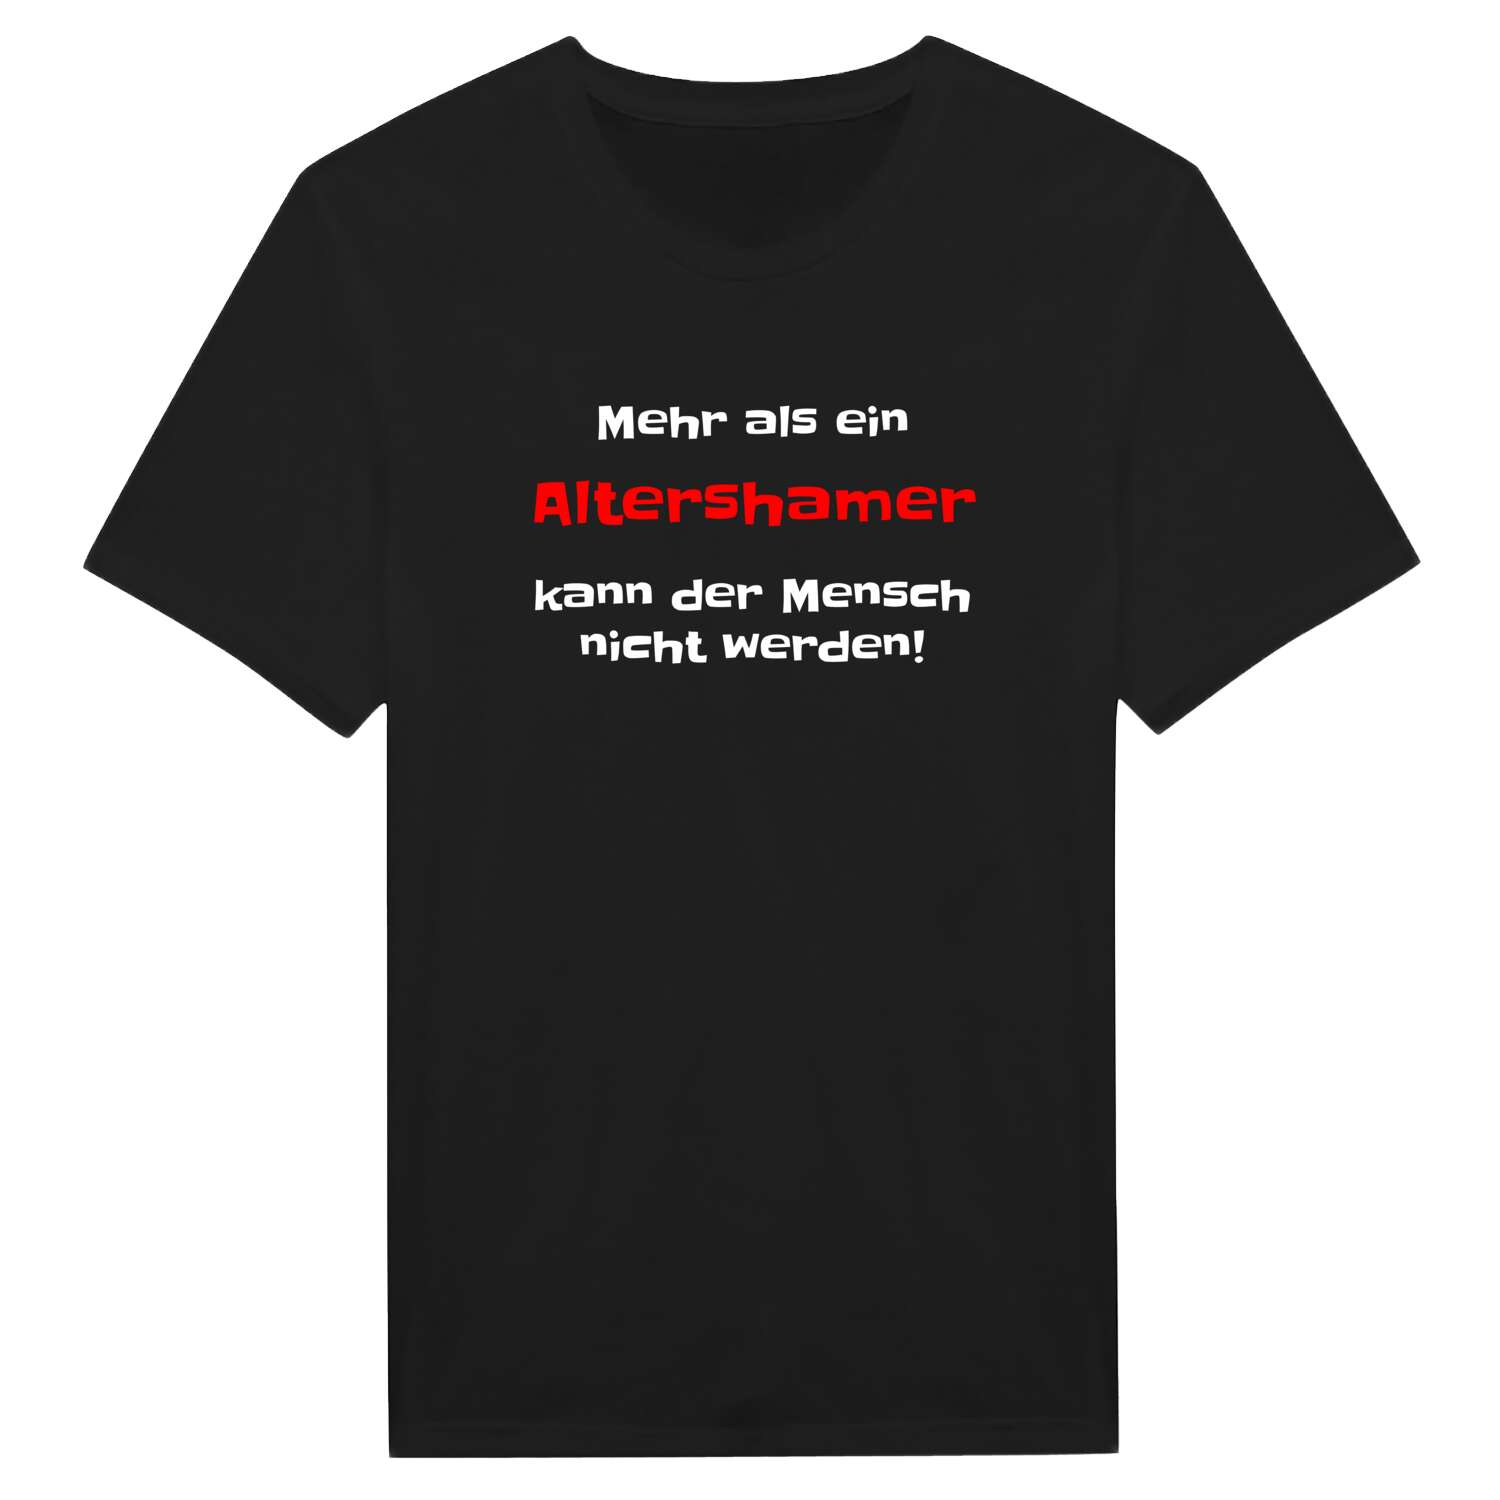 Altersham T-Shirt »Mehr als ein«